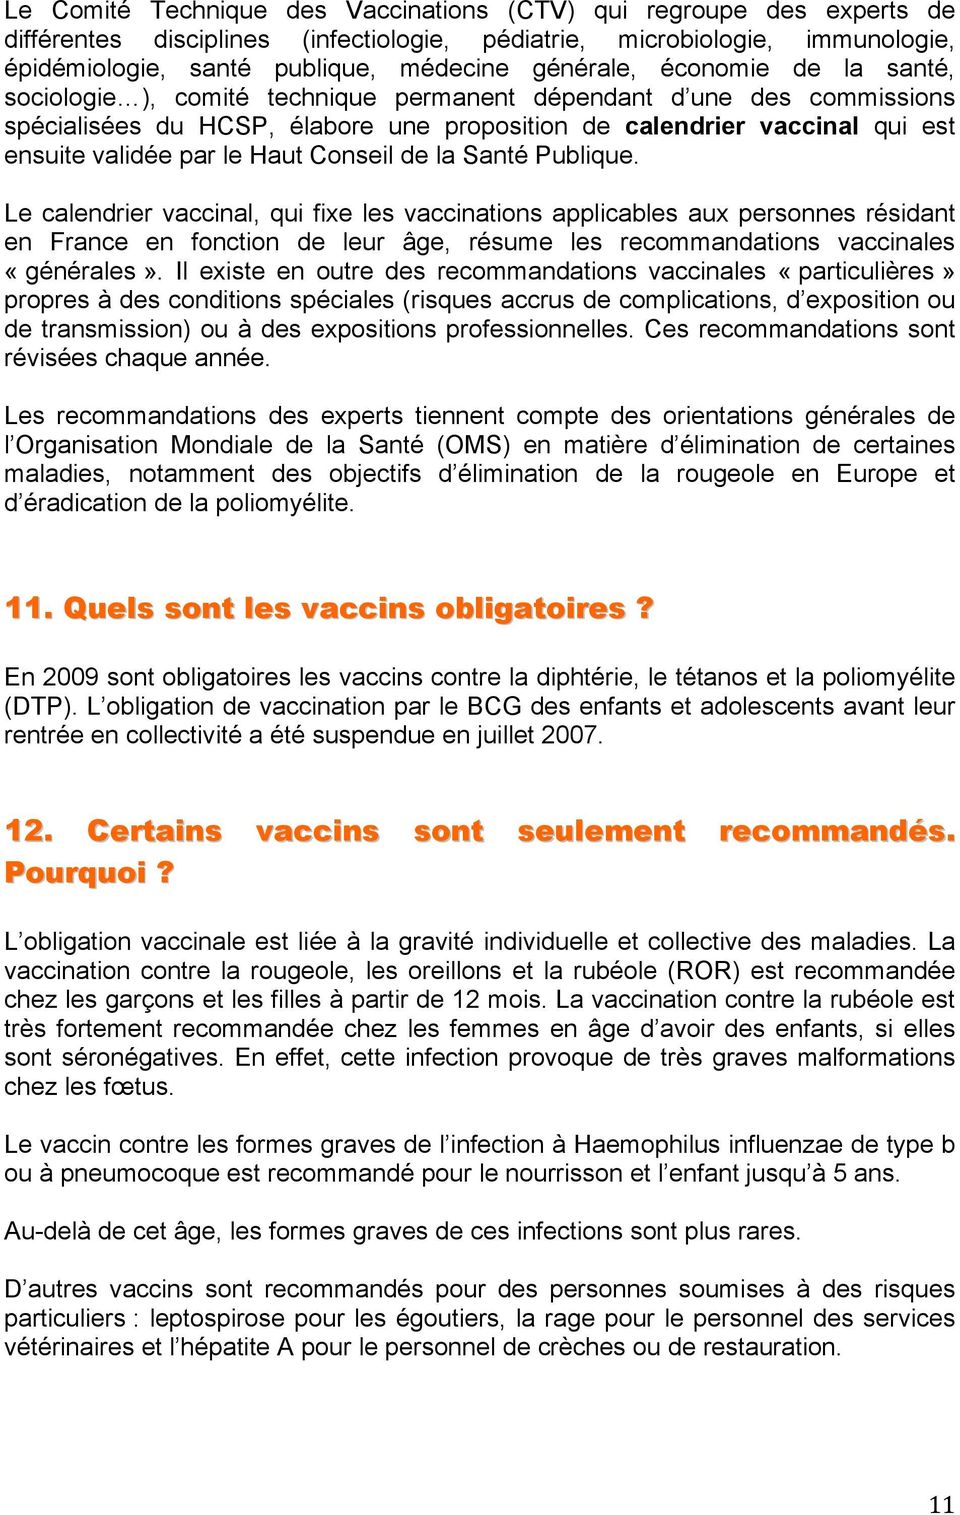 Conseil de la Santé Publique. Le calendrier vaccinal, qui fixe les vaccinations applicables aux personnes résidant en France en fonction de leur âge, résume les recommandations vaccinales «générales».